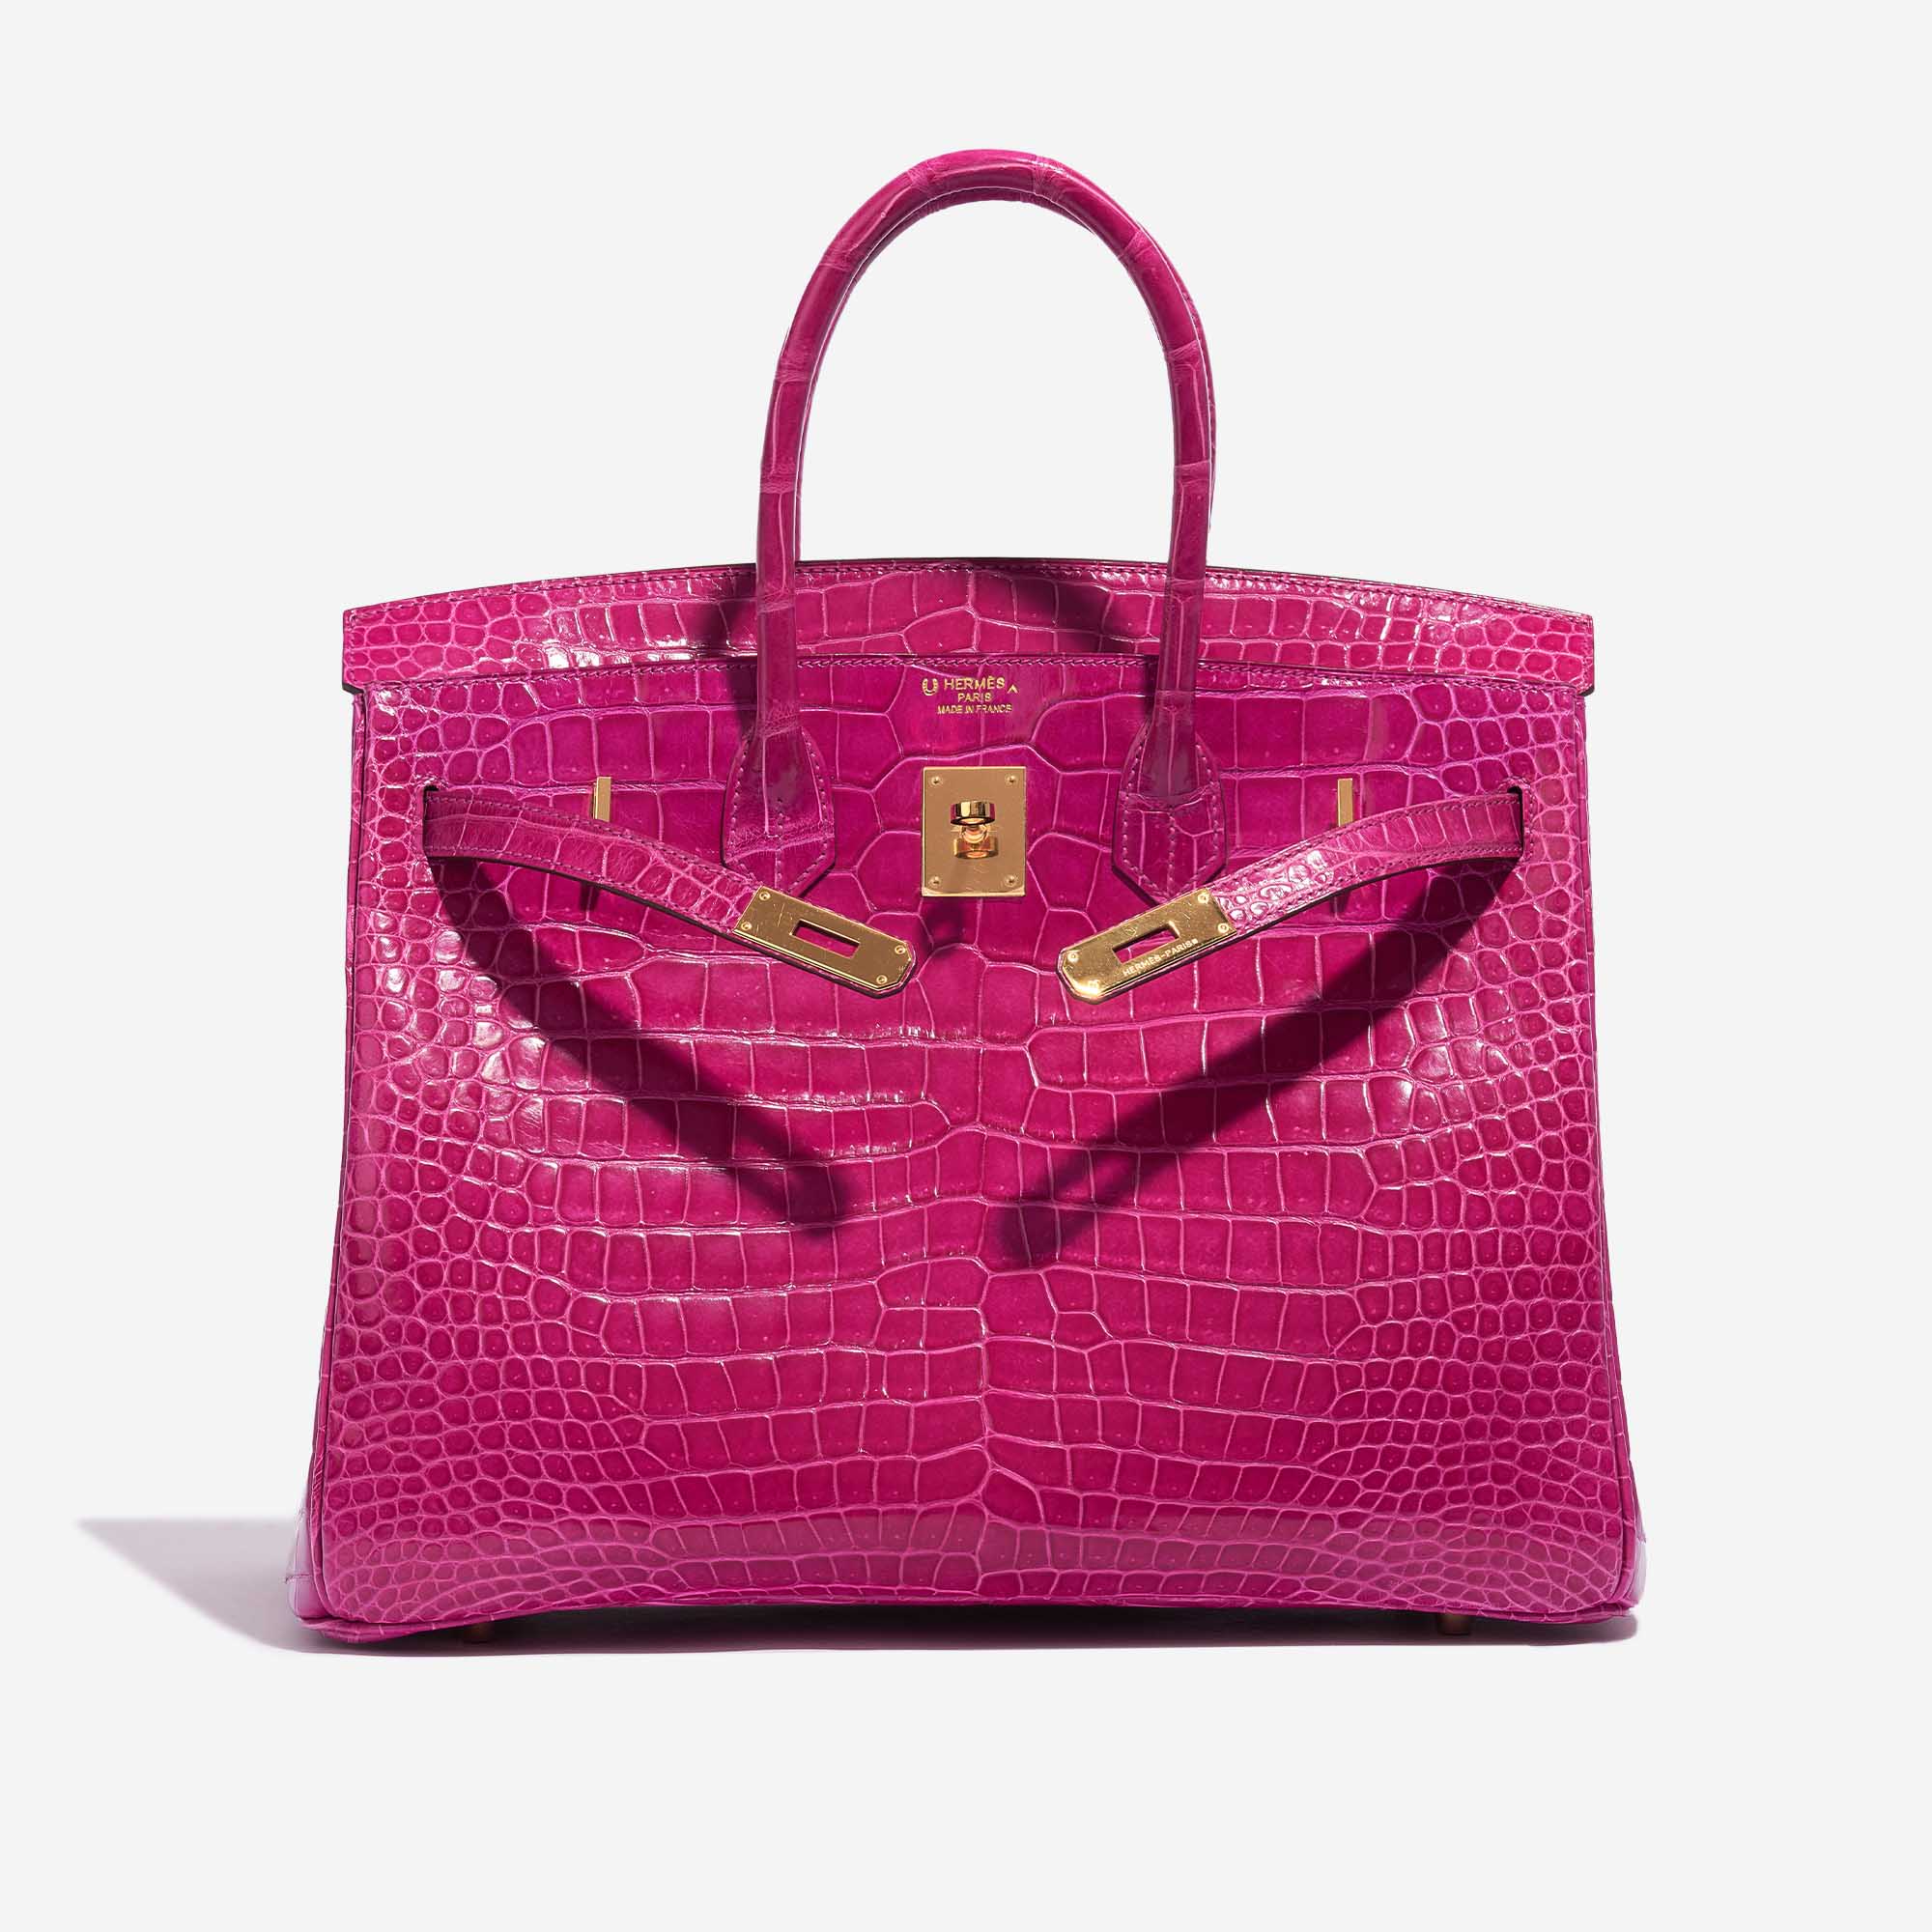 Sac Hermès Birkin 35 Porosus Crocodile Rose Scheherazade Pink Front Open | Vendez votre sac de créateur sur Saclab.com